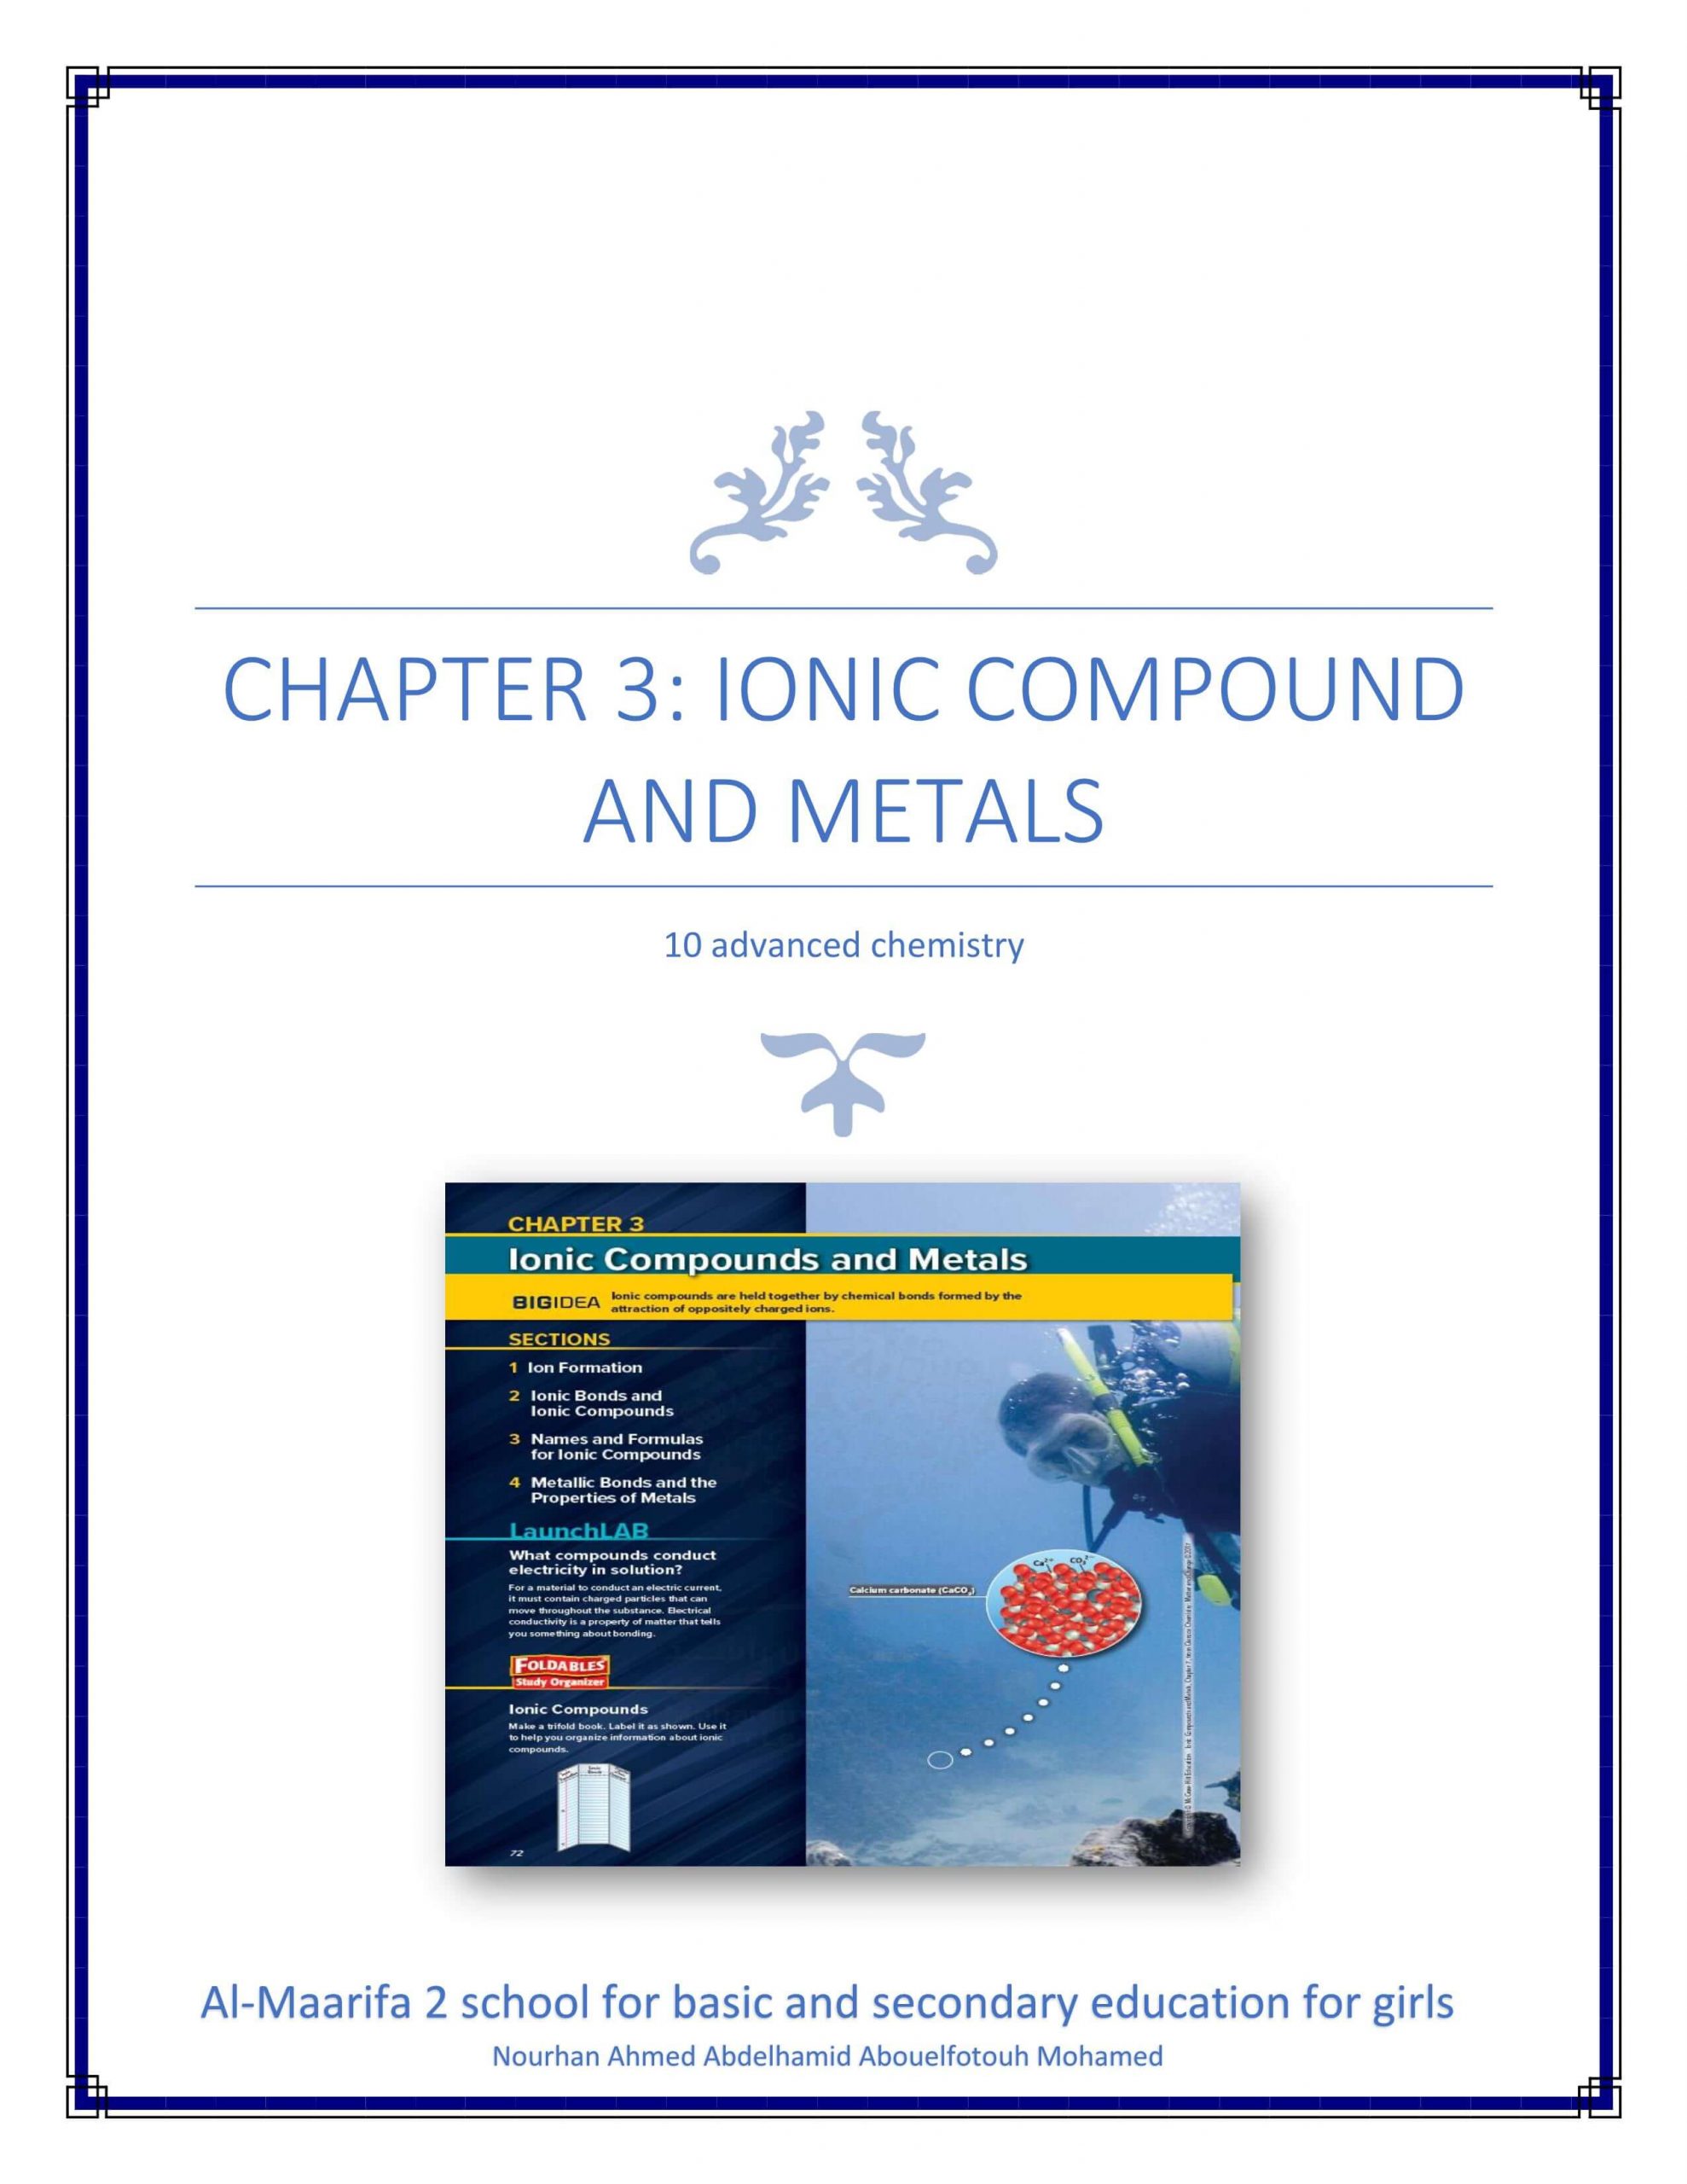 ملخص IONIC COMPOUND AND METALS بالانجليزي الصف العاشر متقدم مادة الكيمياء 